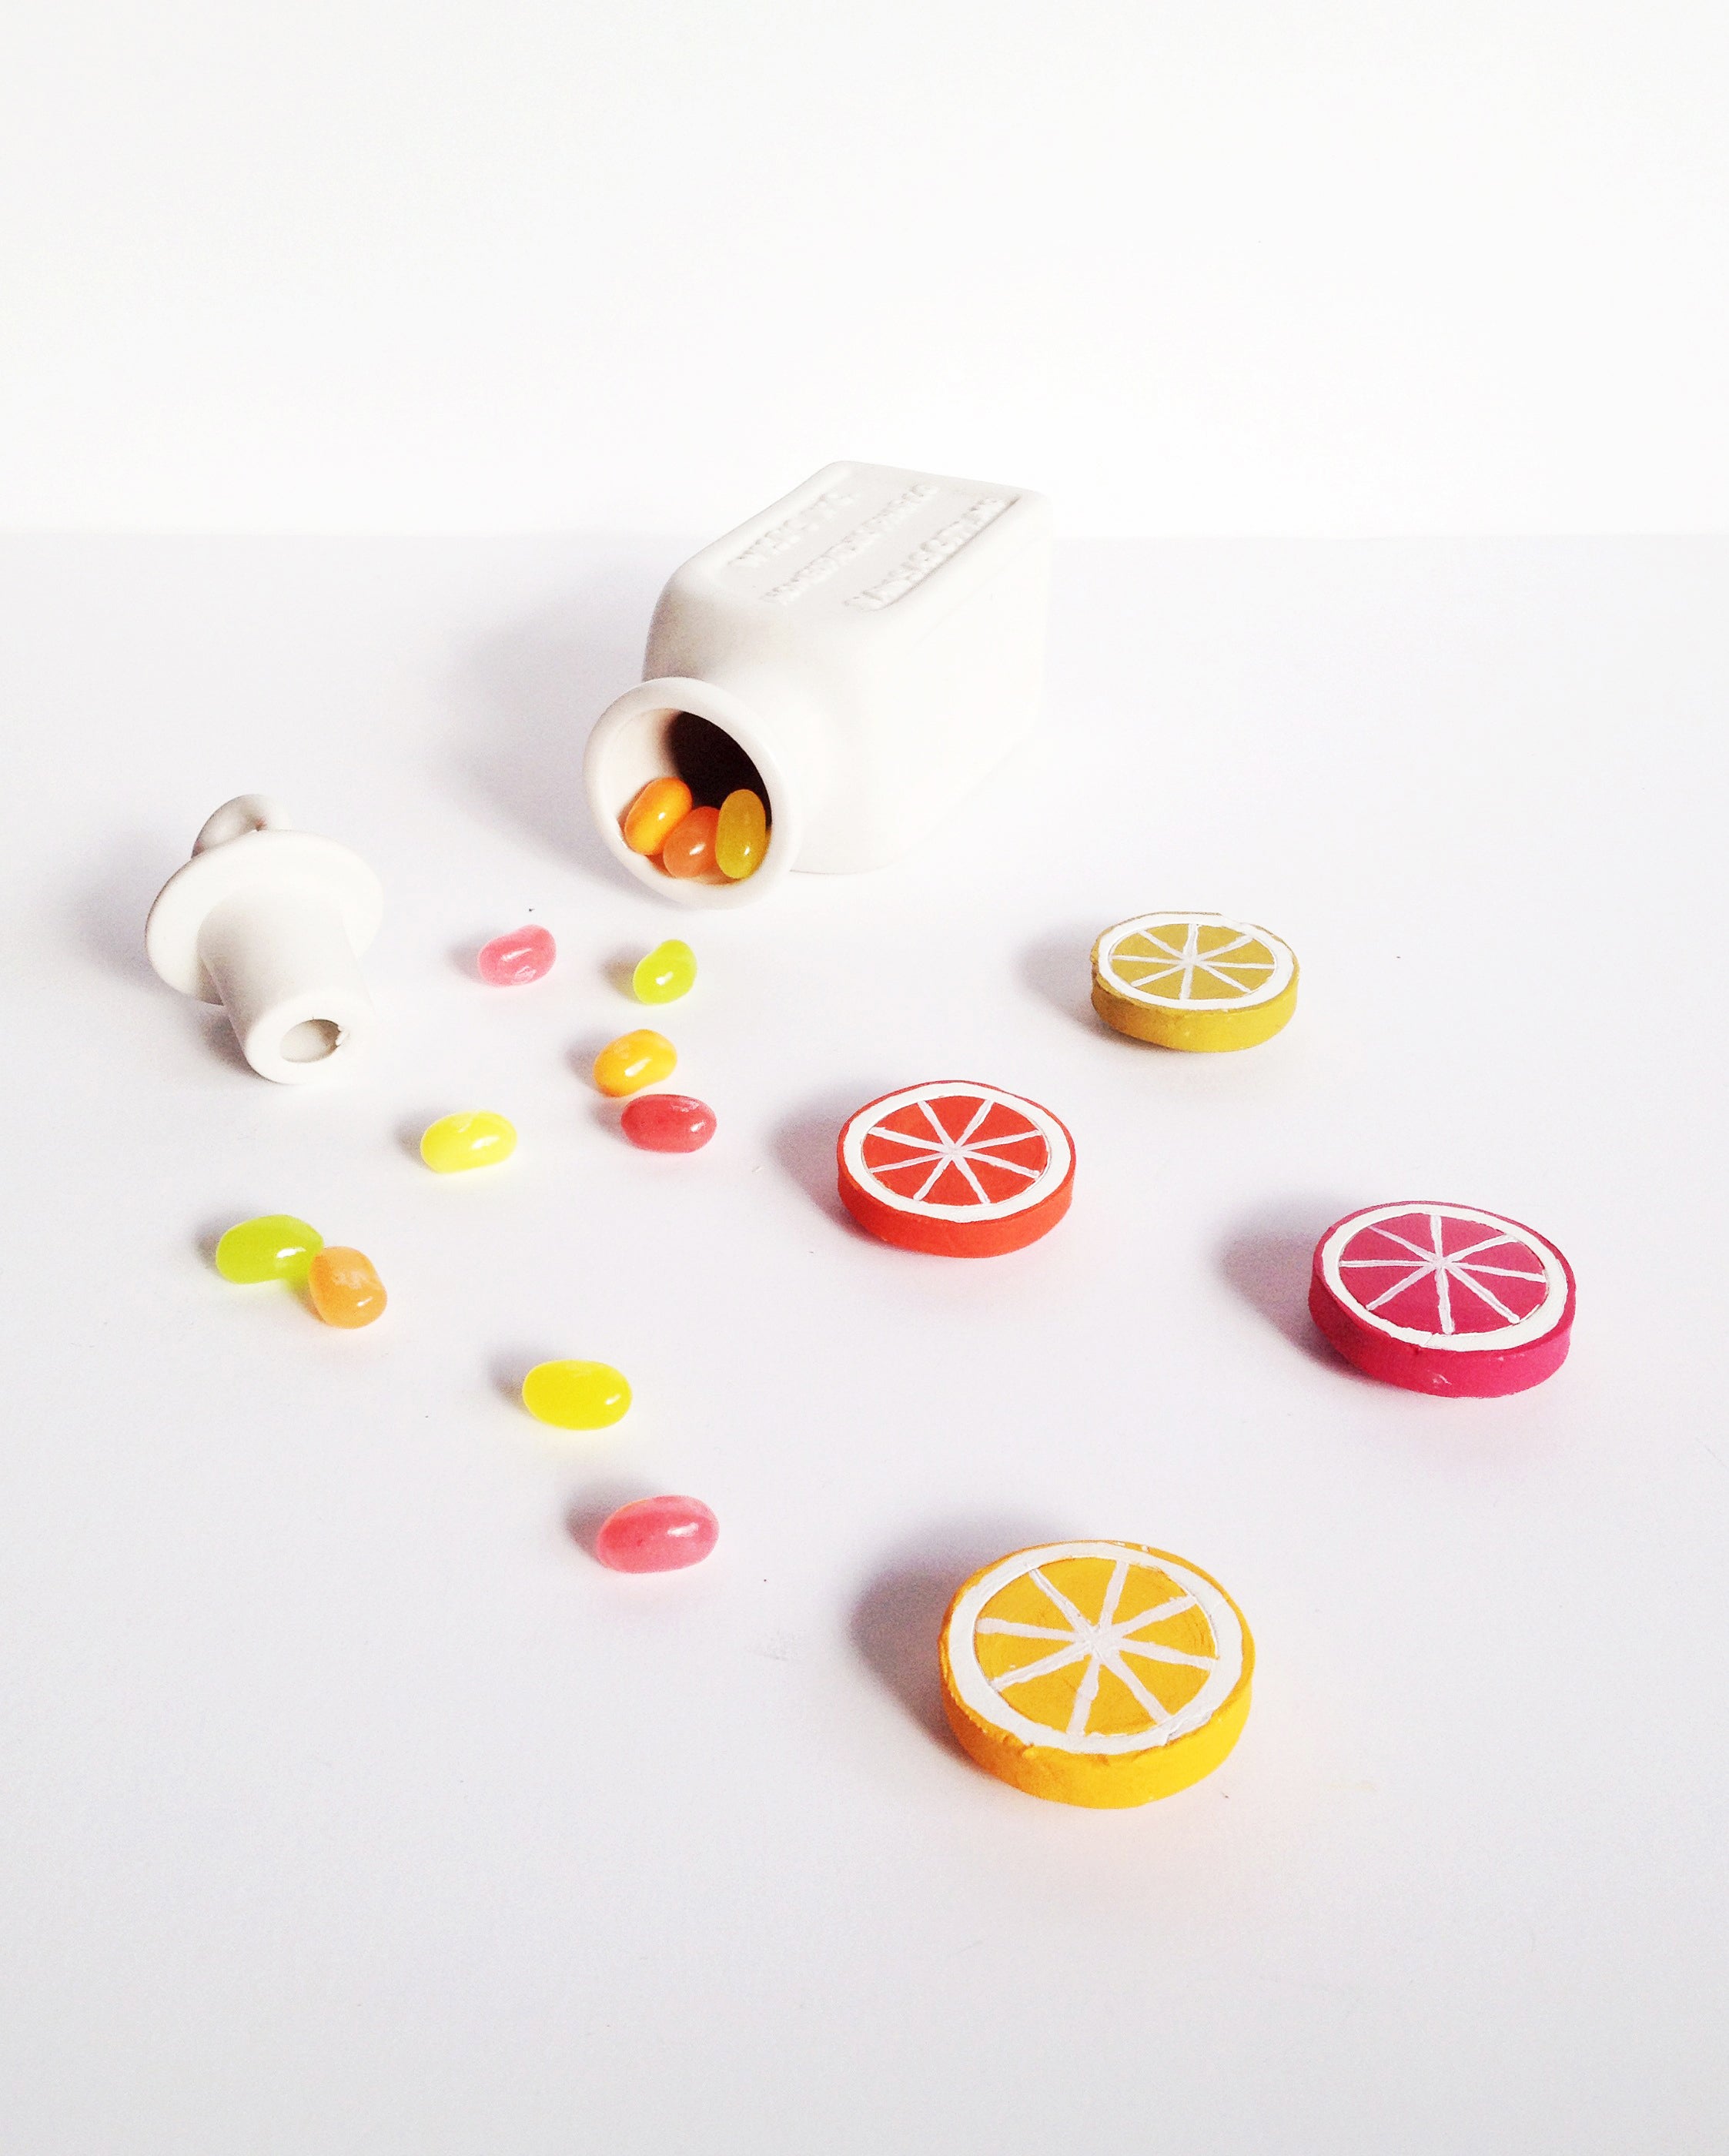 Fridge Magnets DIY - Fruits, How to make diy fridge magnets at home